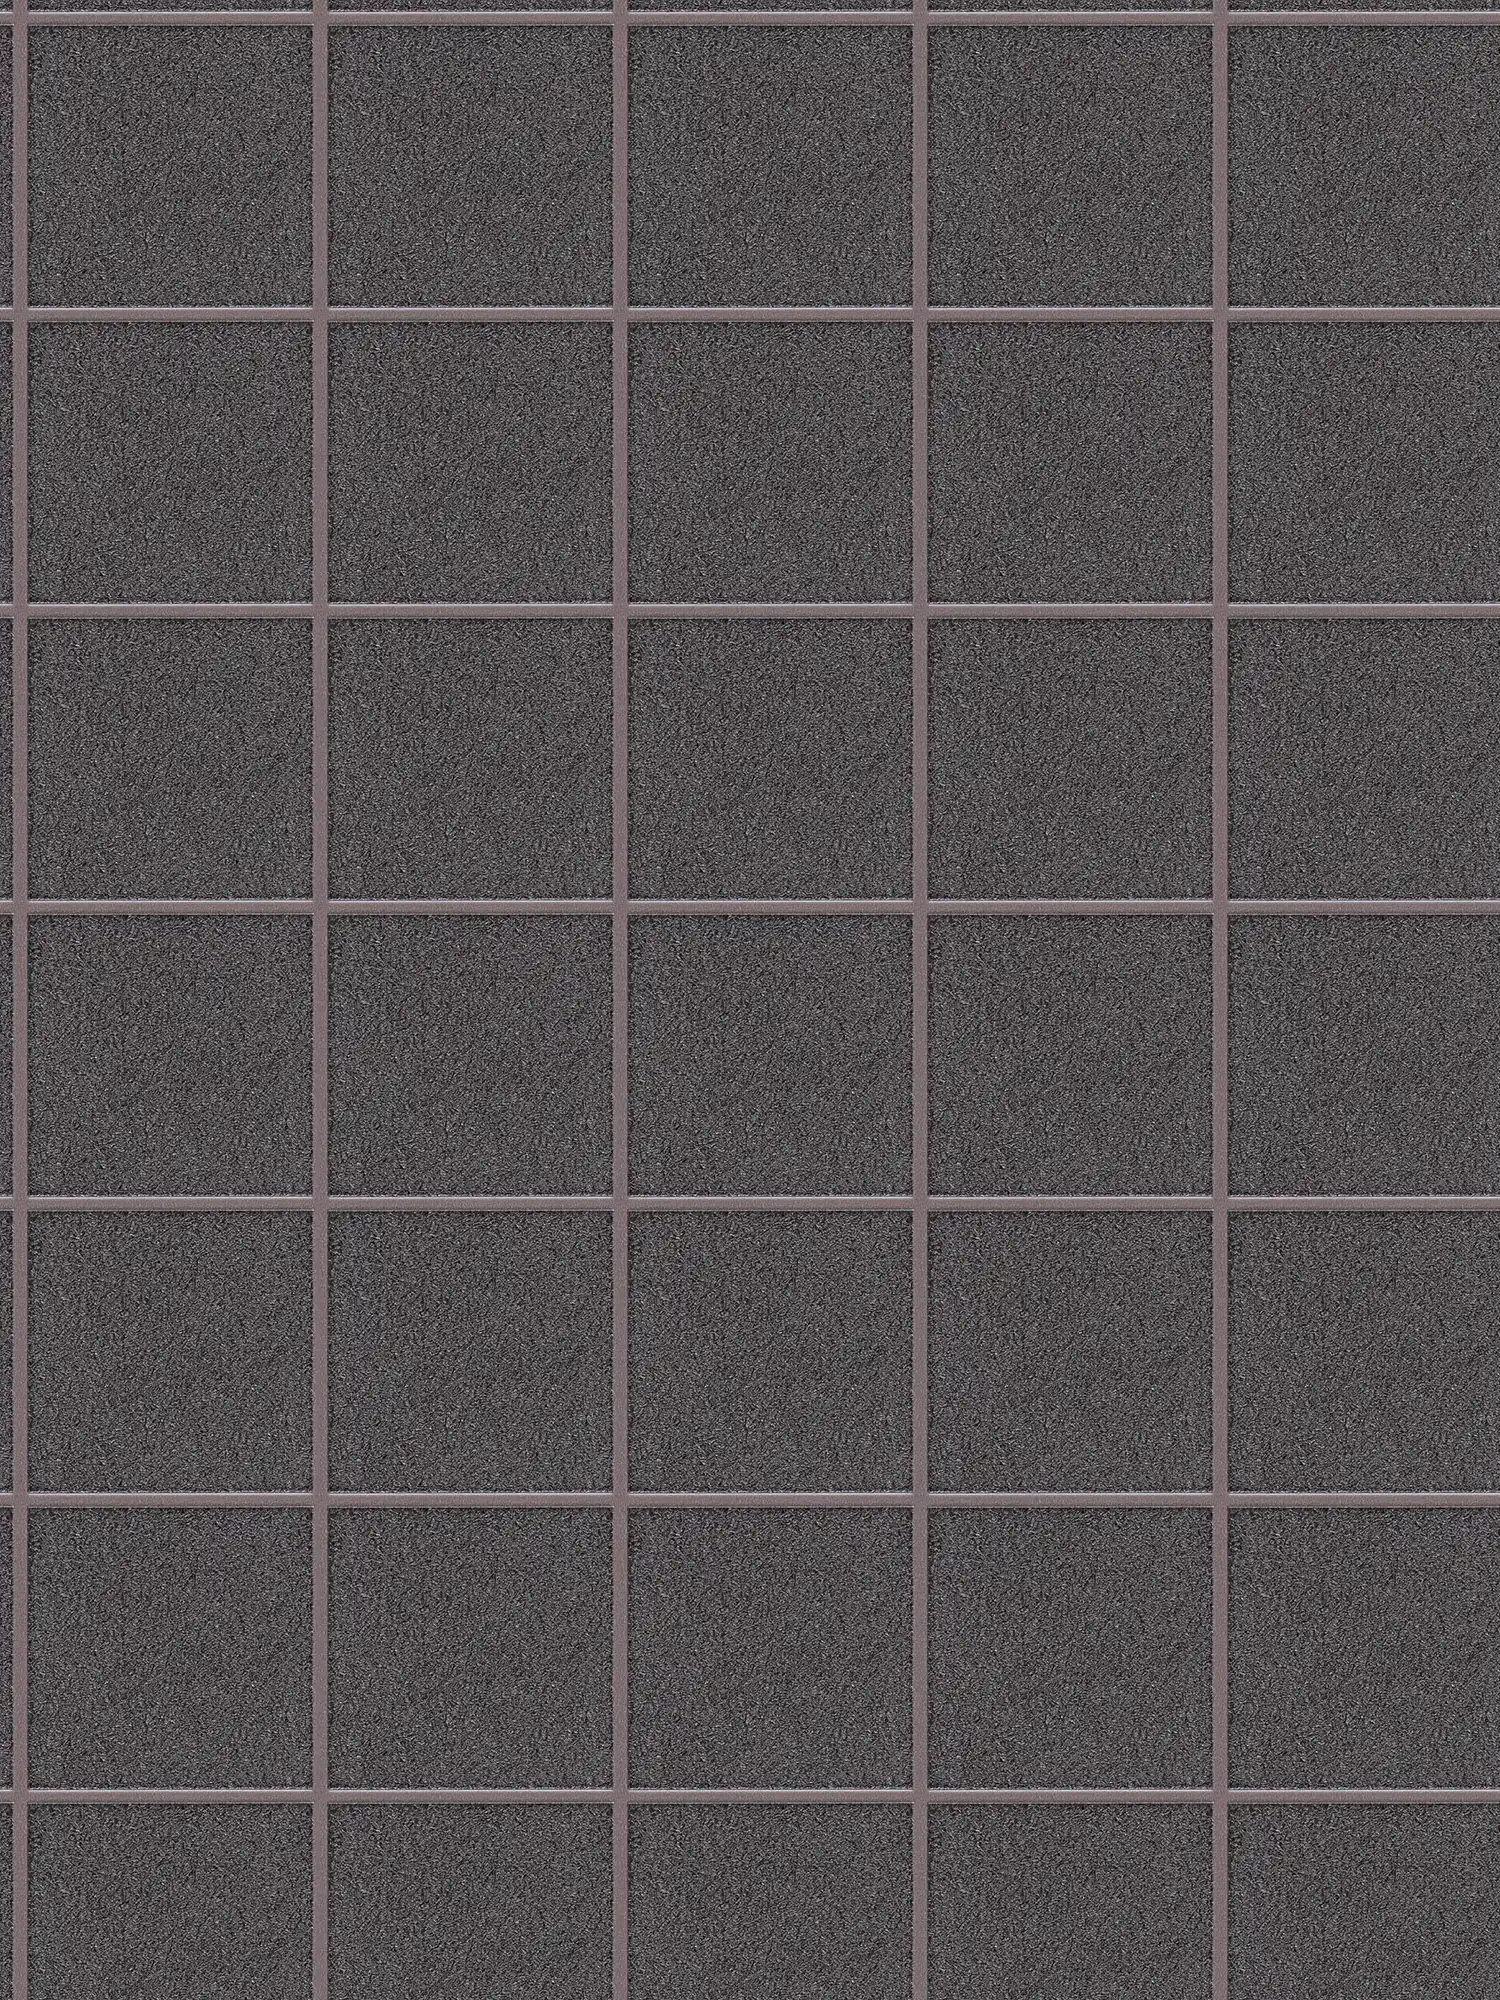 Wallpaper tile pattern with 3D effect, mottled - copper, grey, purple
